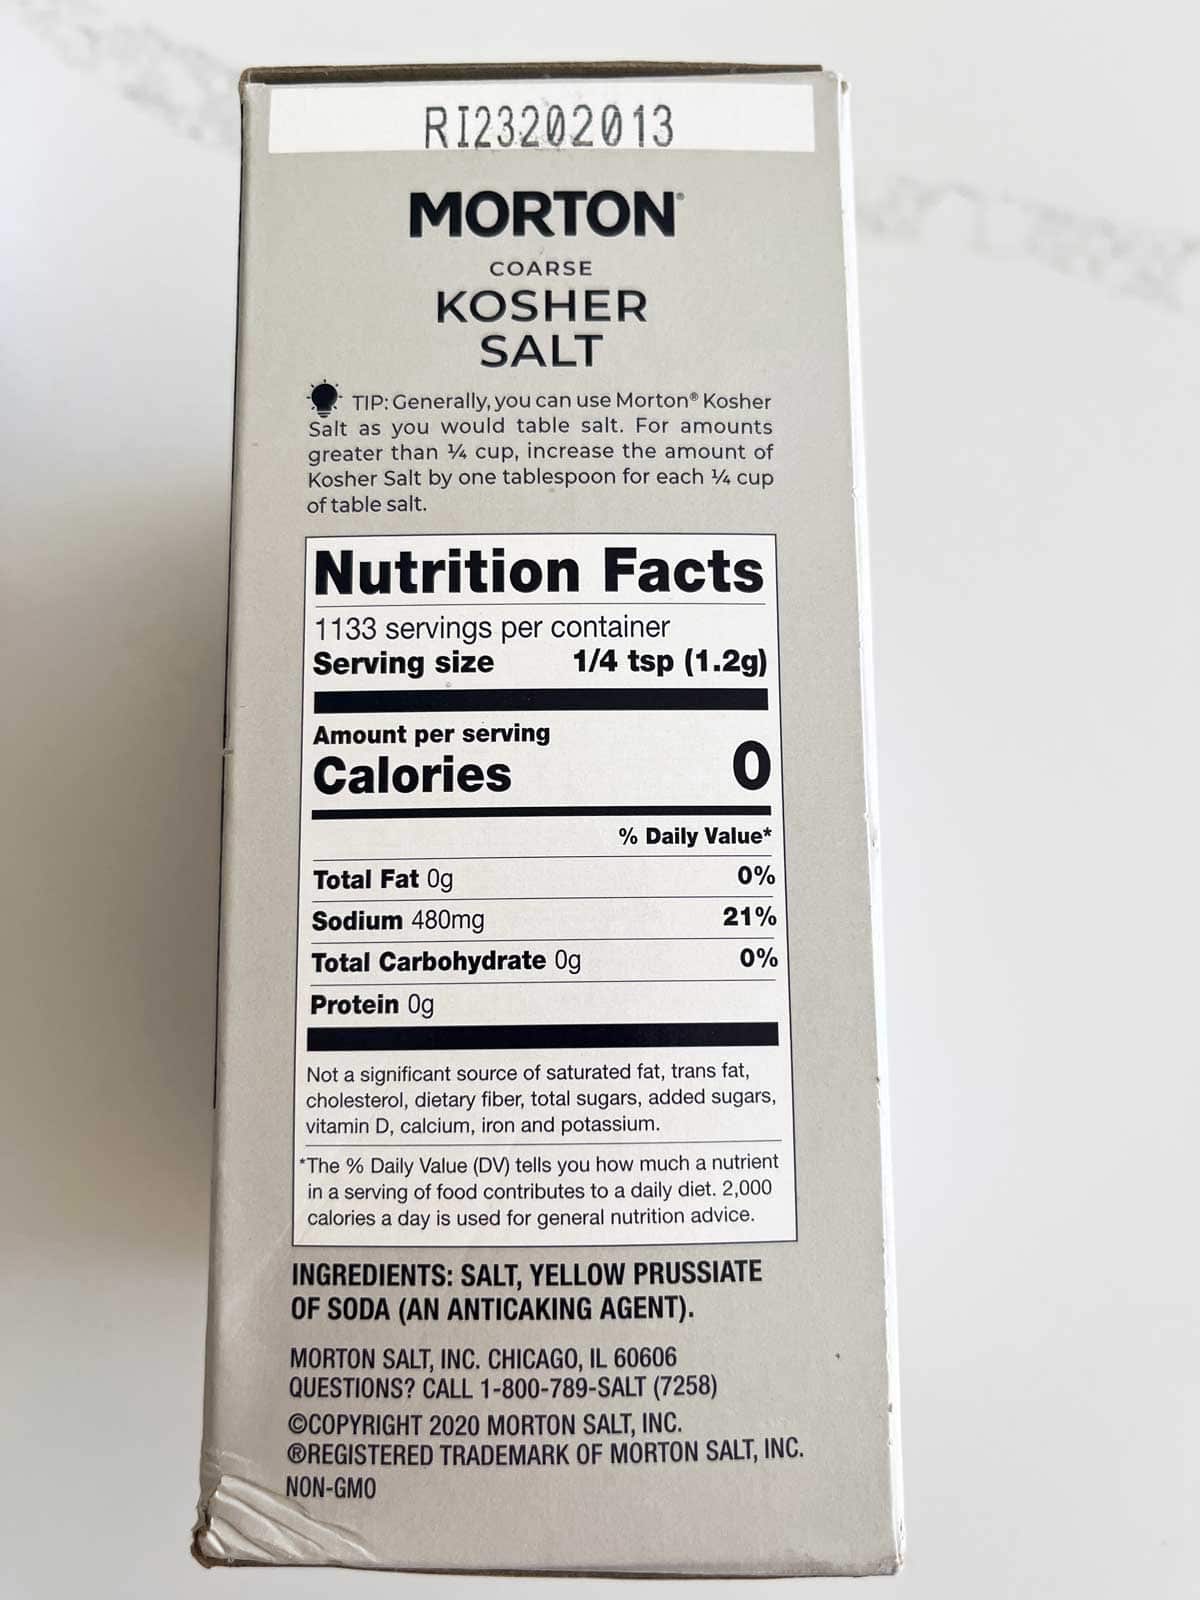 Morton Kosher Salt ingredients. 